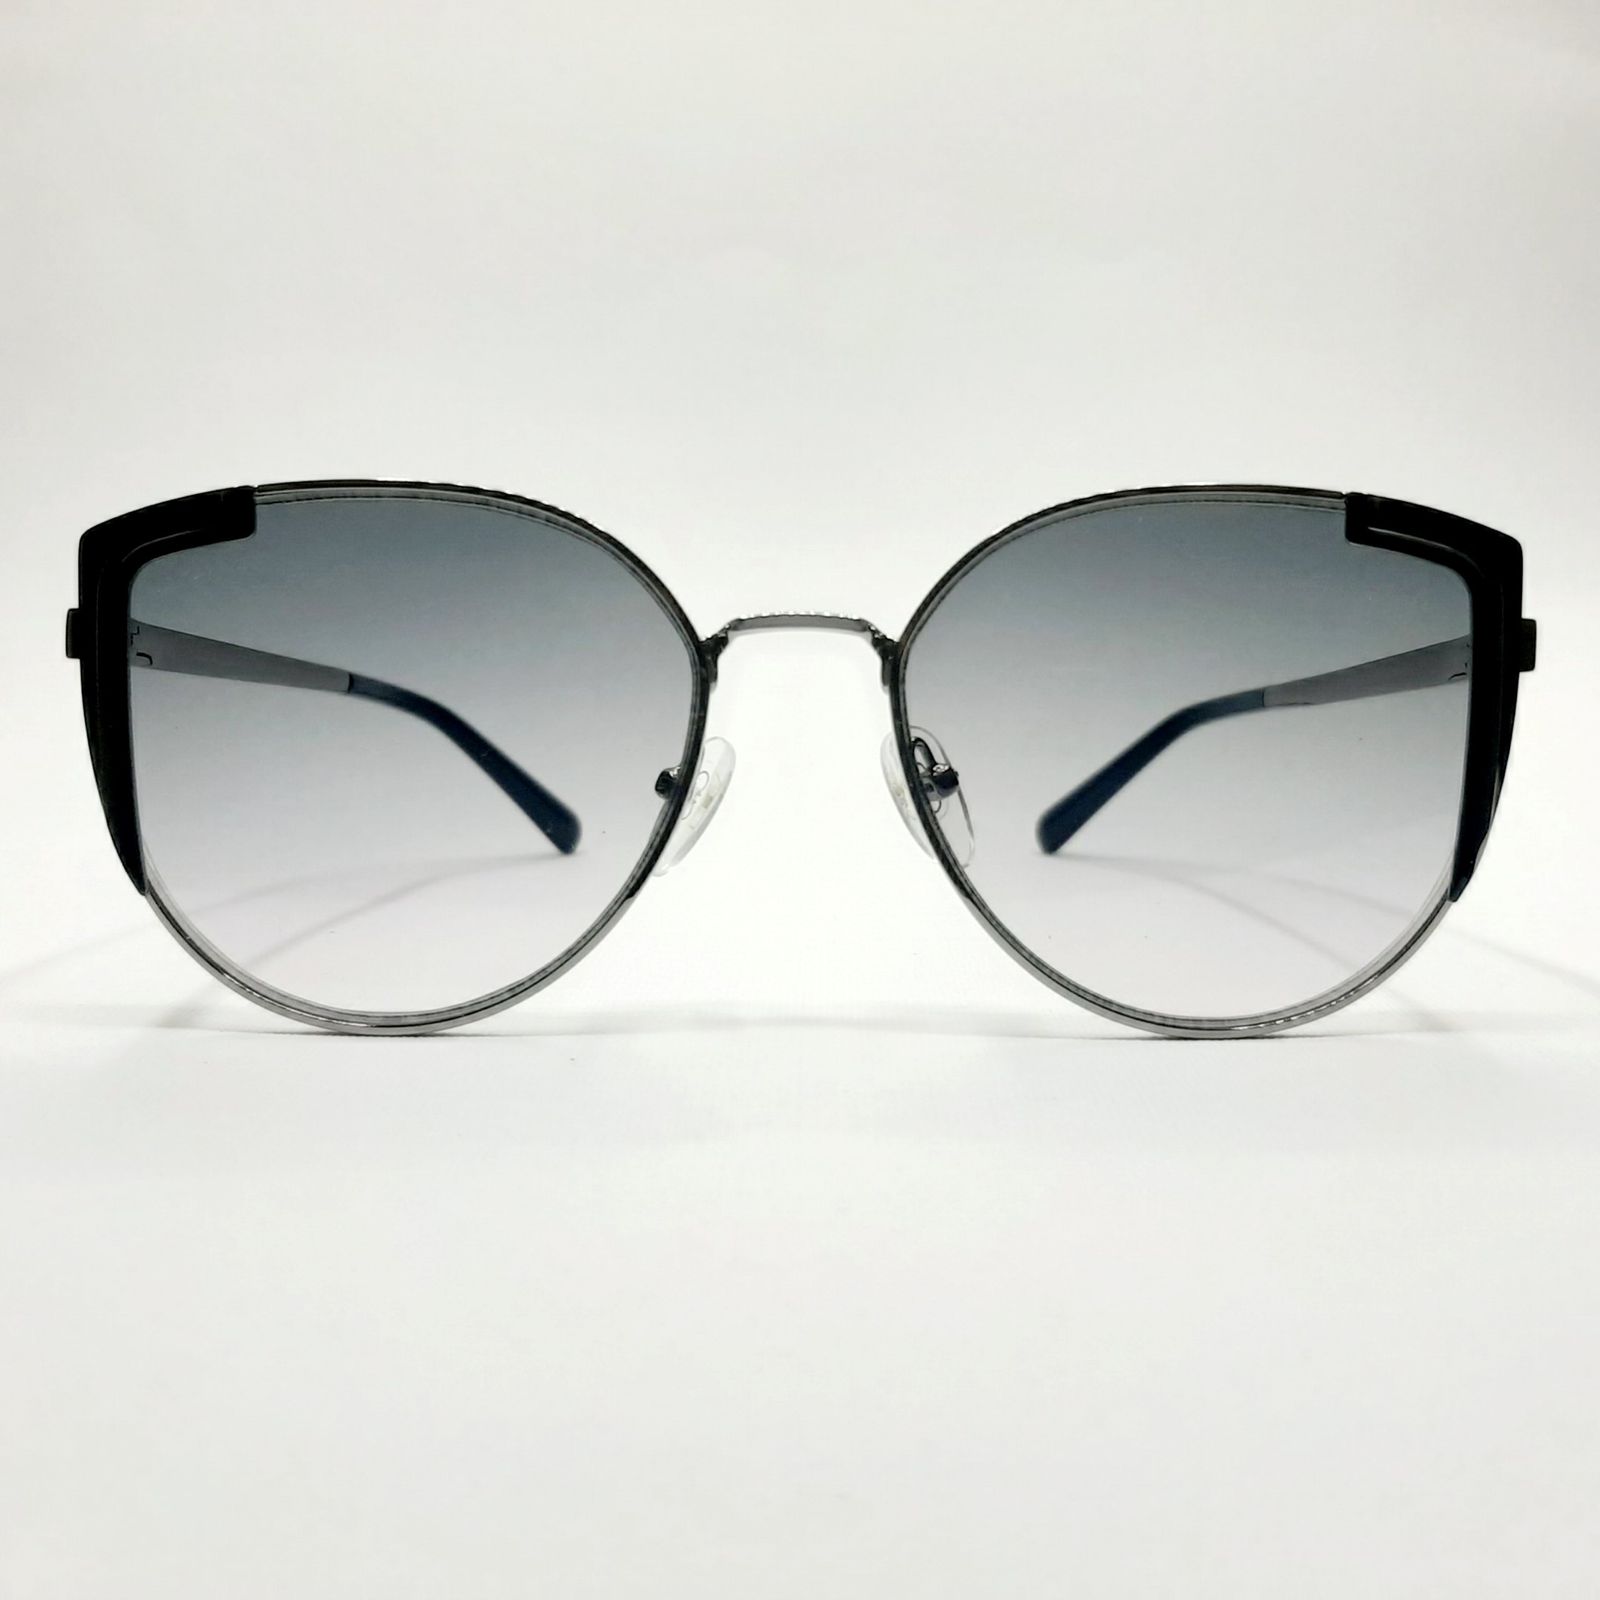 عینک آفتابی سالواتوره فراگامو مدل SF260S687b -  - 2